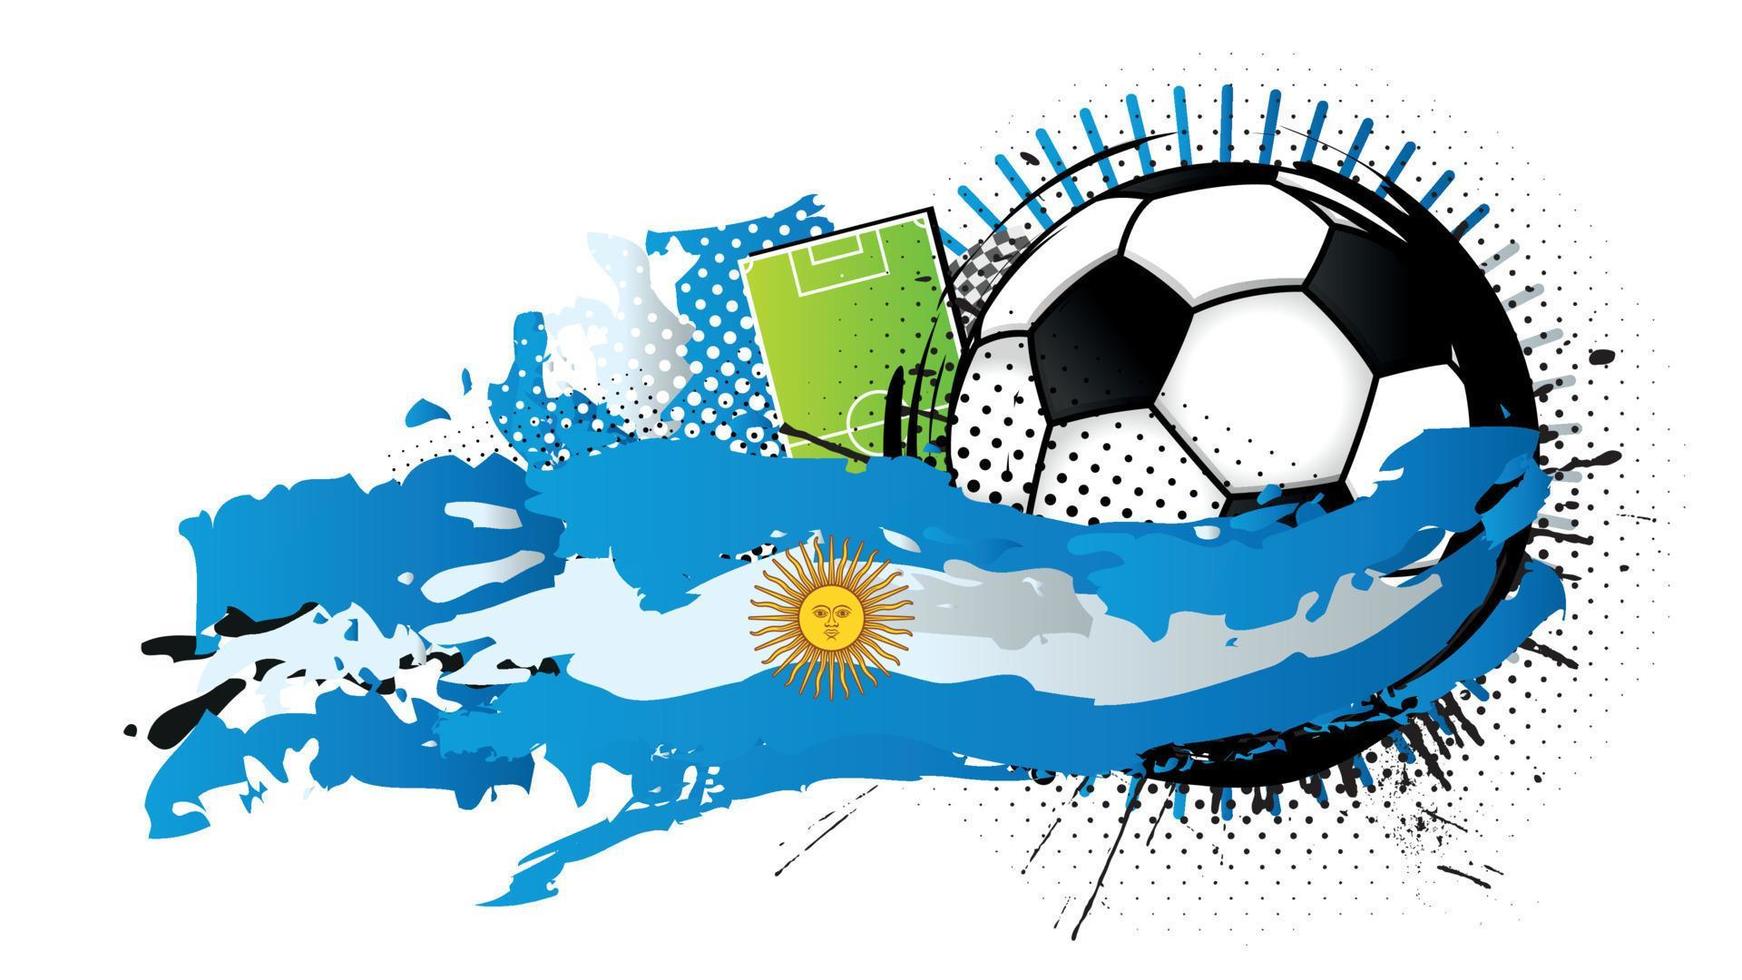 zwart en wit voetbal bal omringd door licht blauw en wit vlekken vormen de vlag van Argentinië met een voetbal veld- in de achtergrond. vector beeld